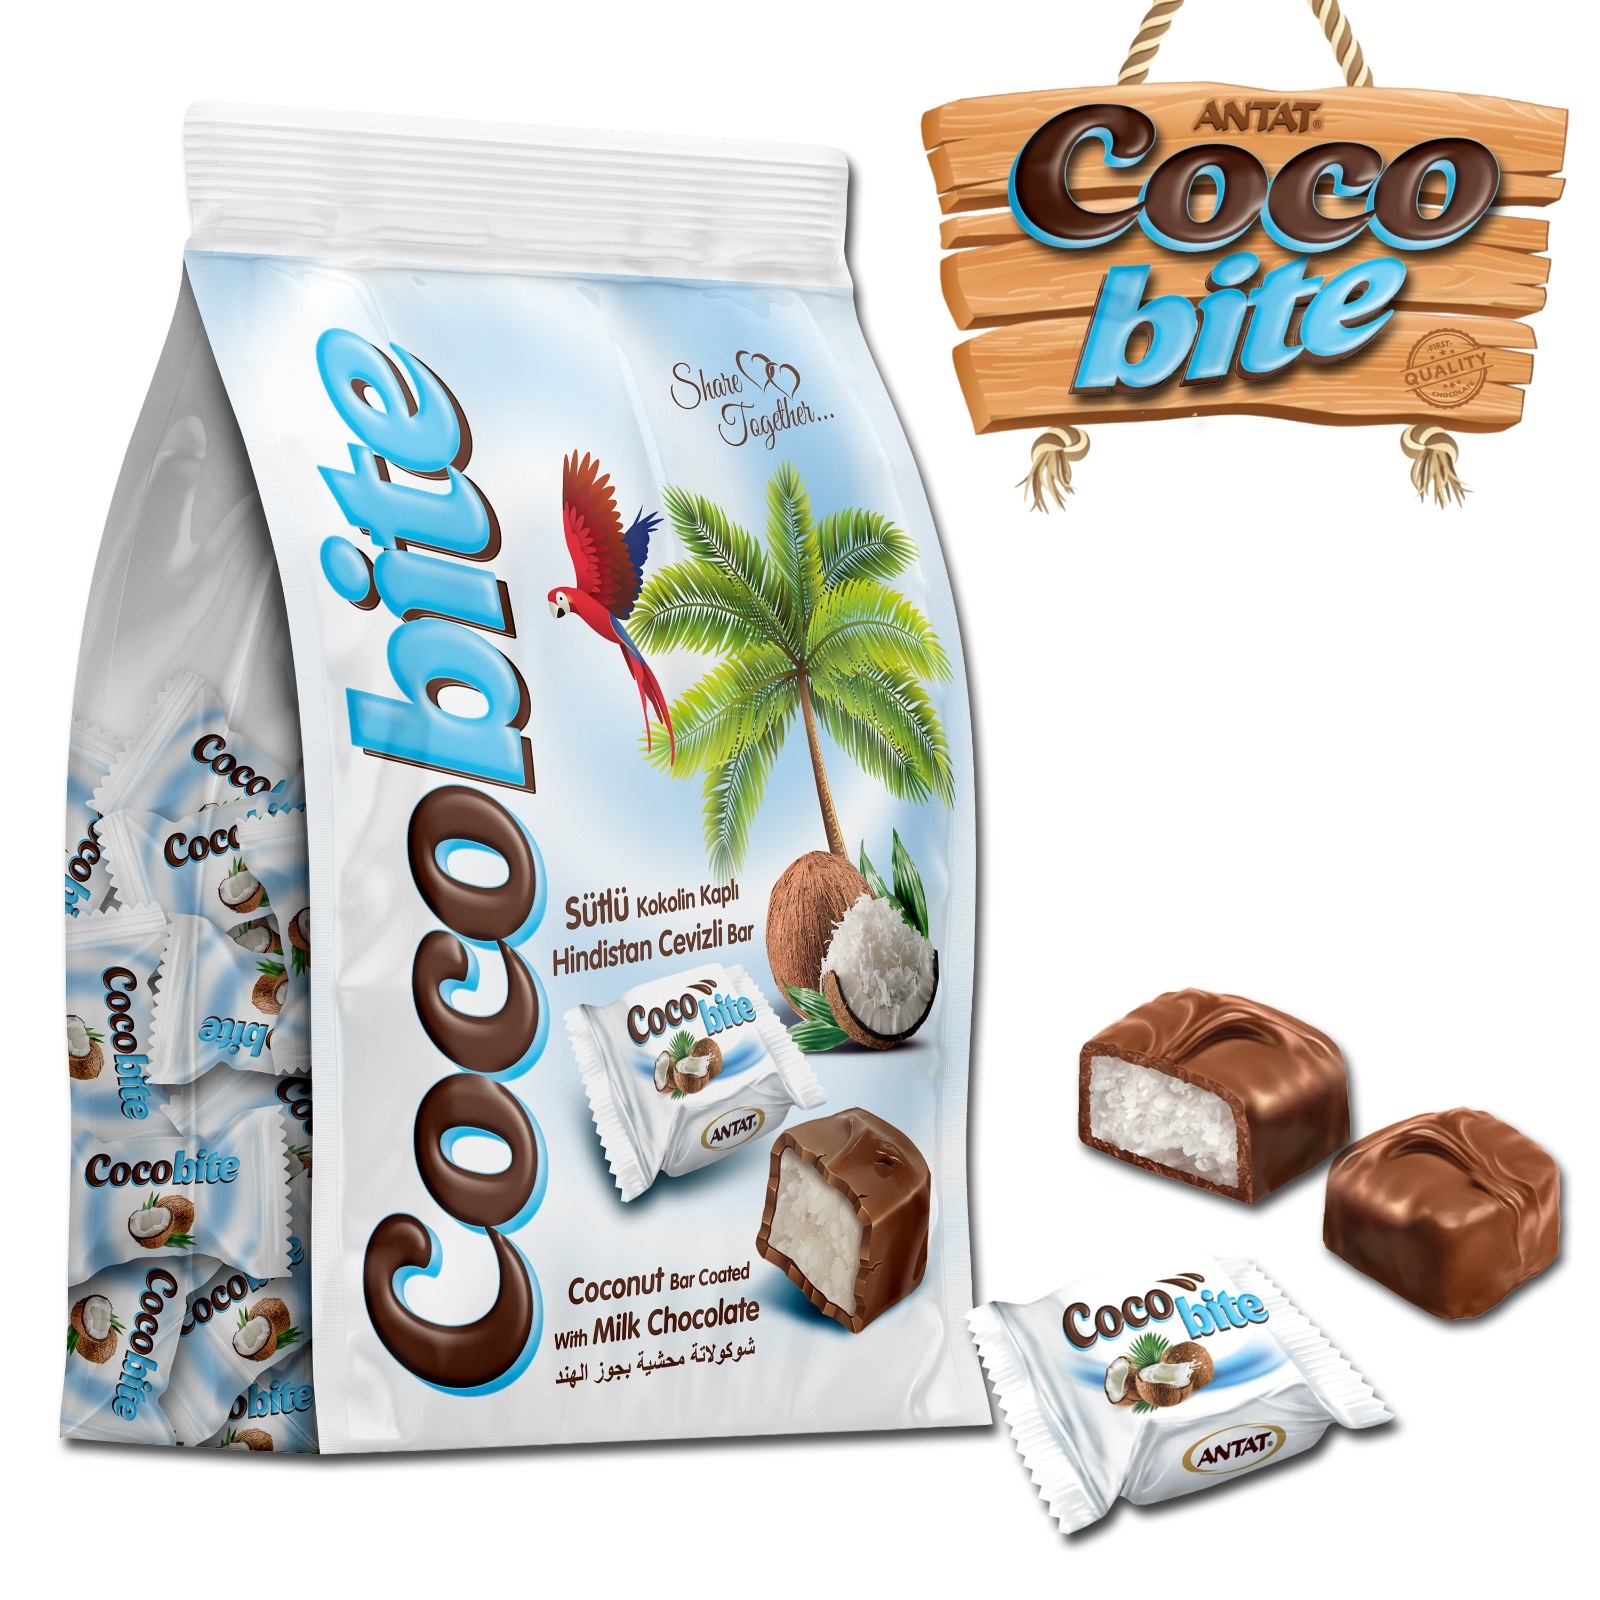 Antat Cocobite Çikolata Kaplı Hindistan Cevizli Bar 1 KG